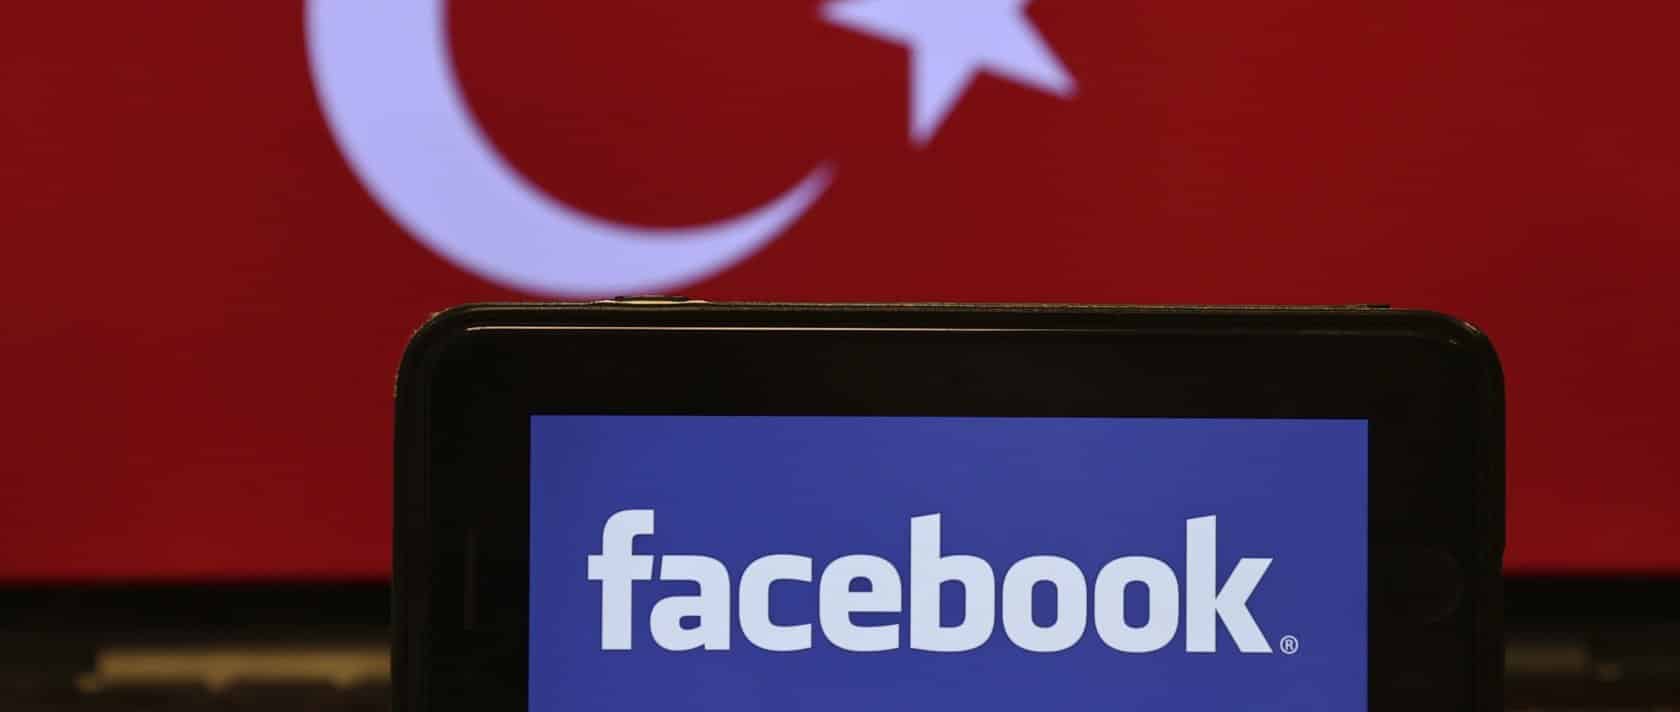 فيسبوك تبدأ عملية تعيين ممثلها في تركيا